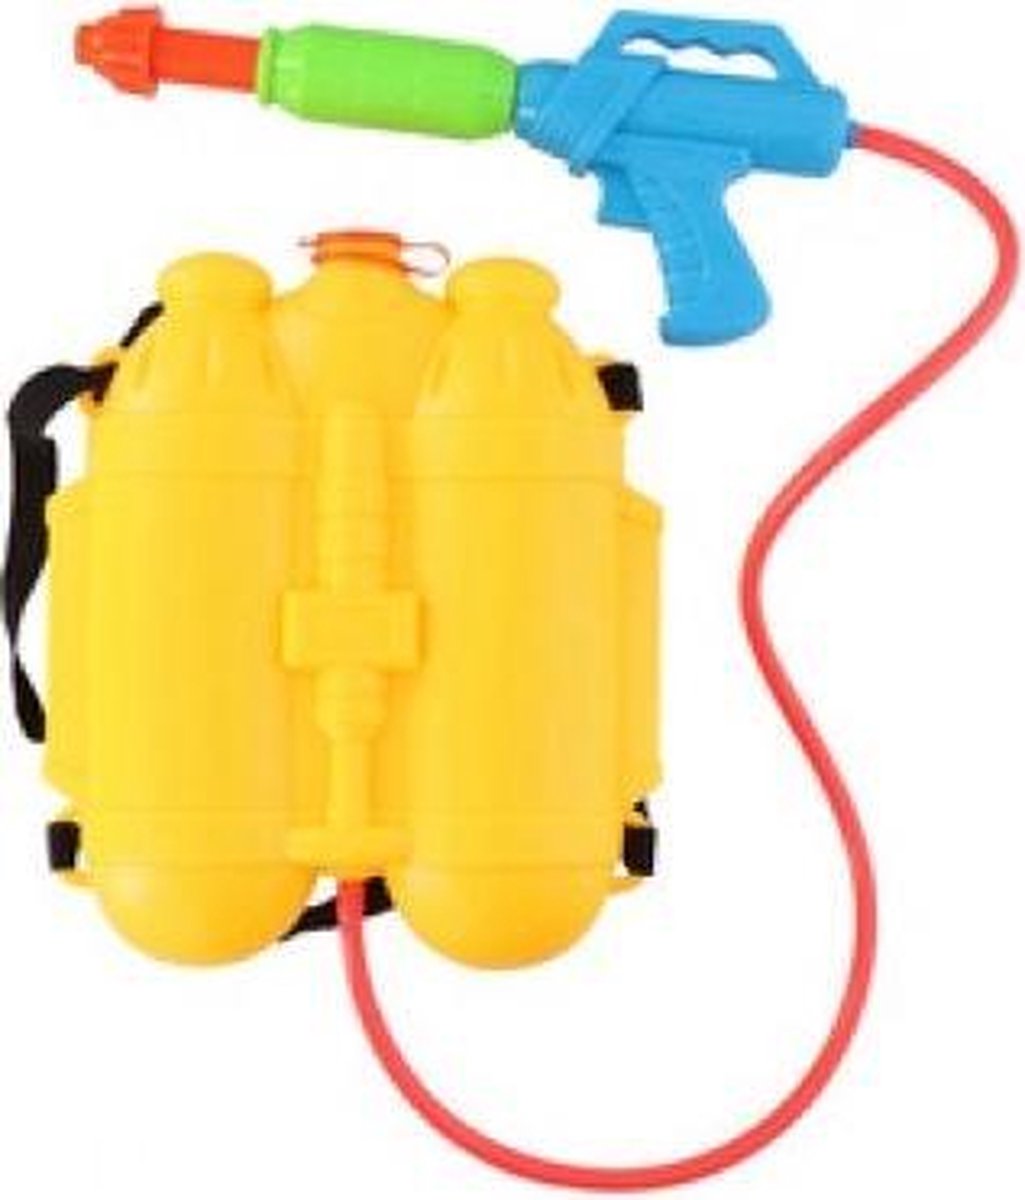 1x waterpistool/waterpistolen - watertank rugzak met waterspuit bol.com